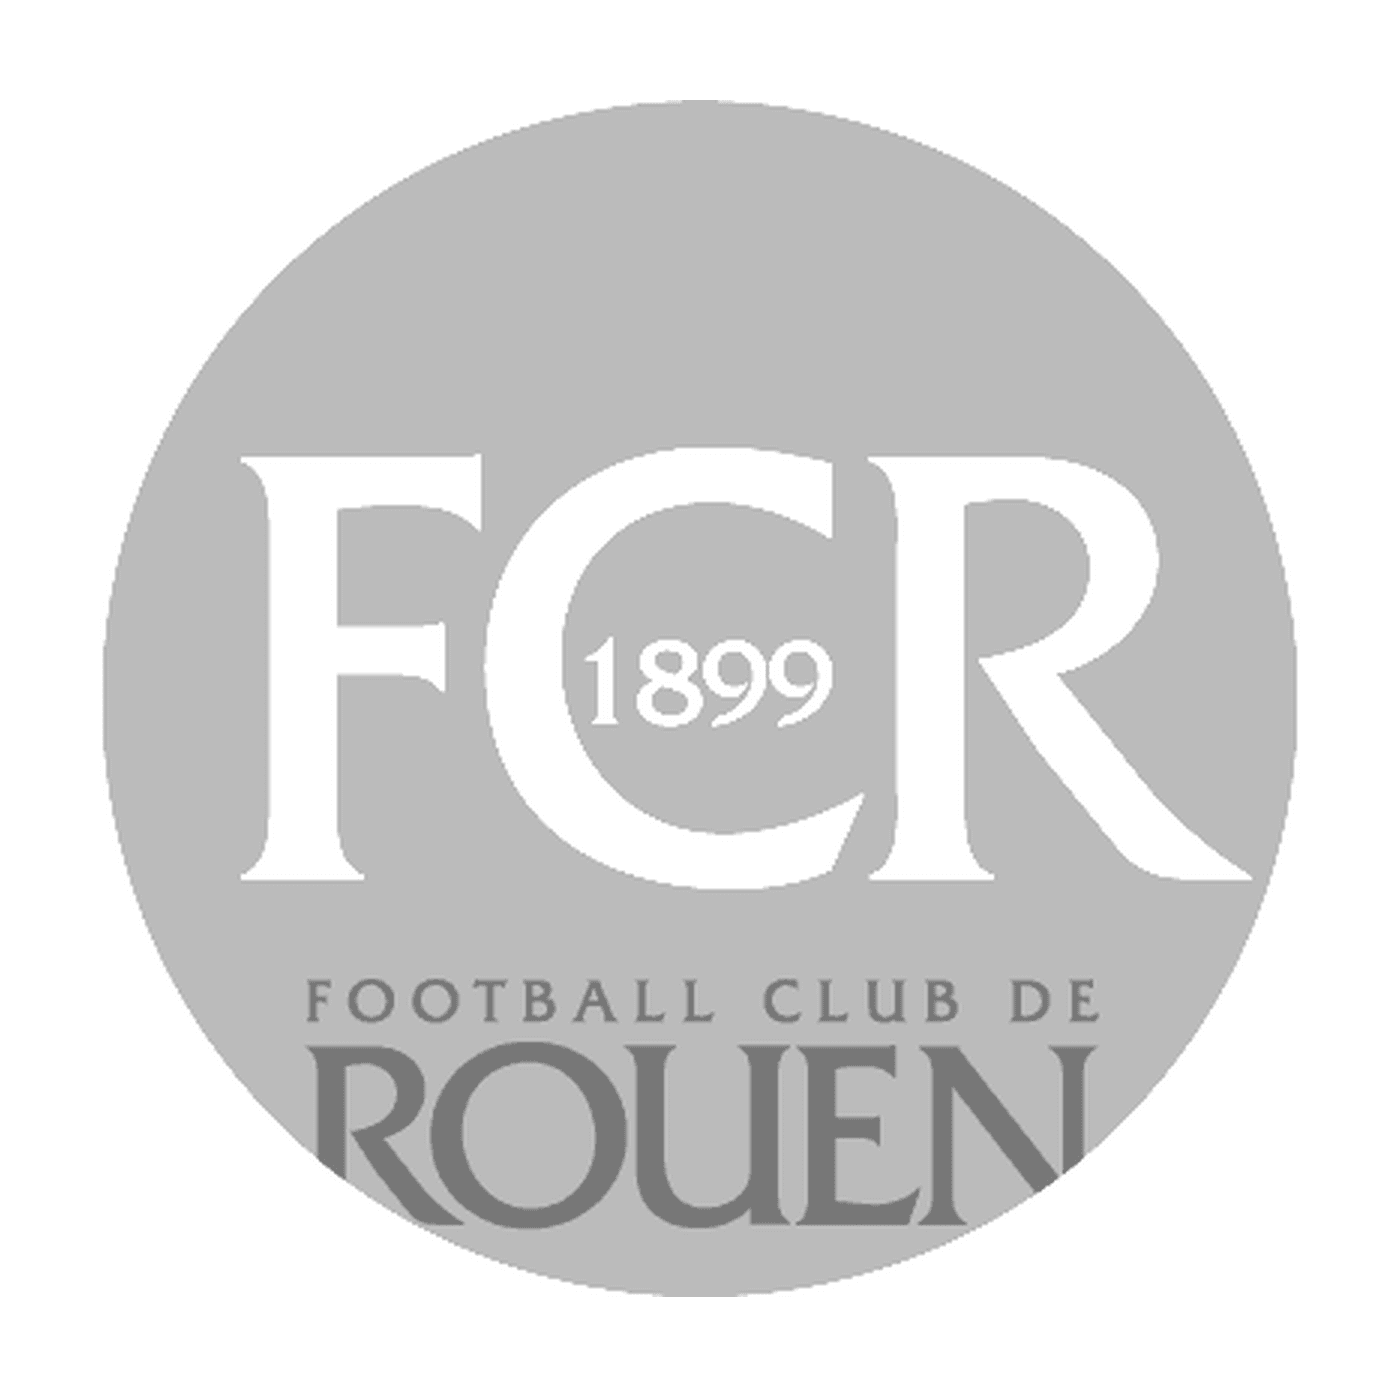  Logo of the Football Club de Rouen 